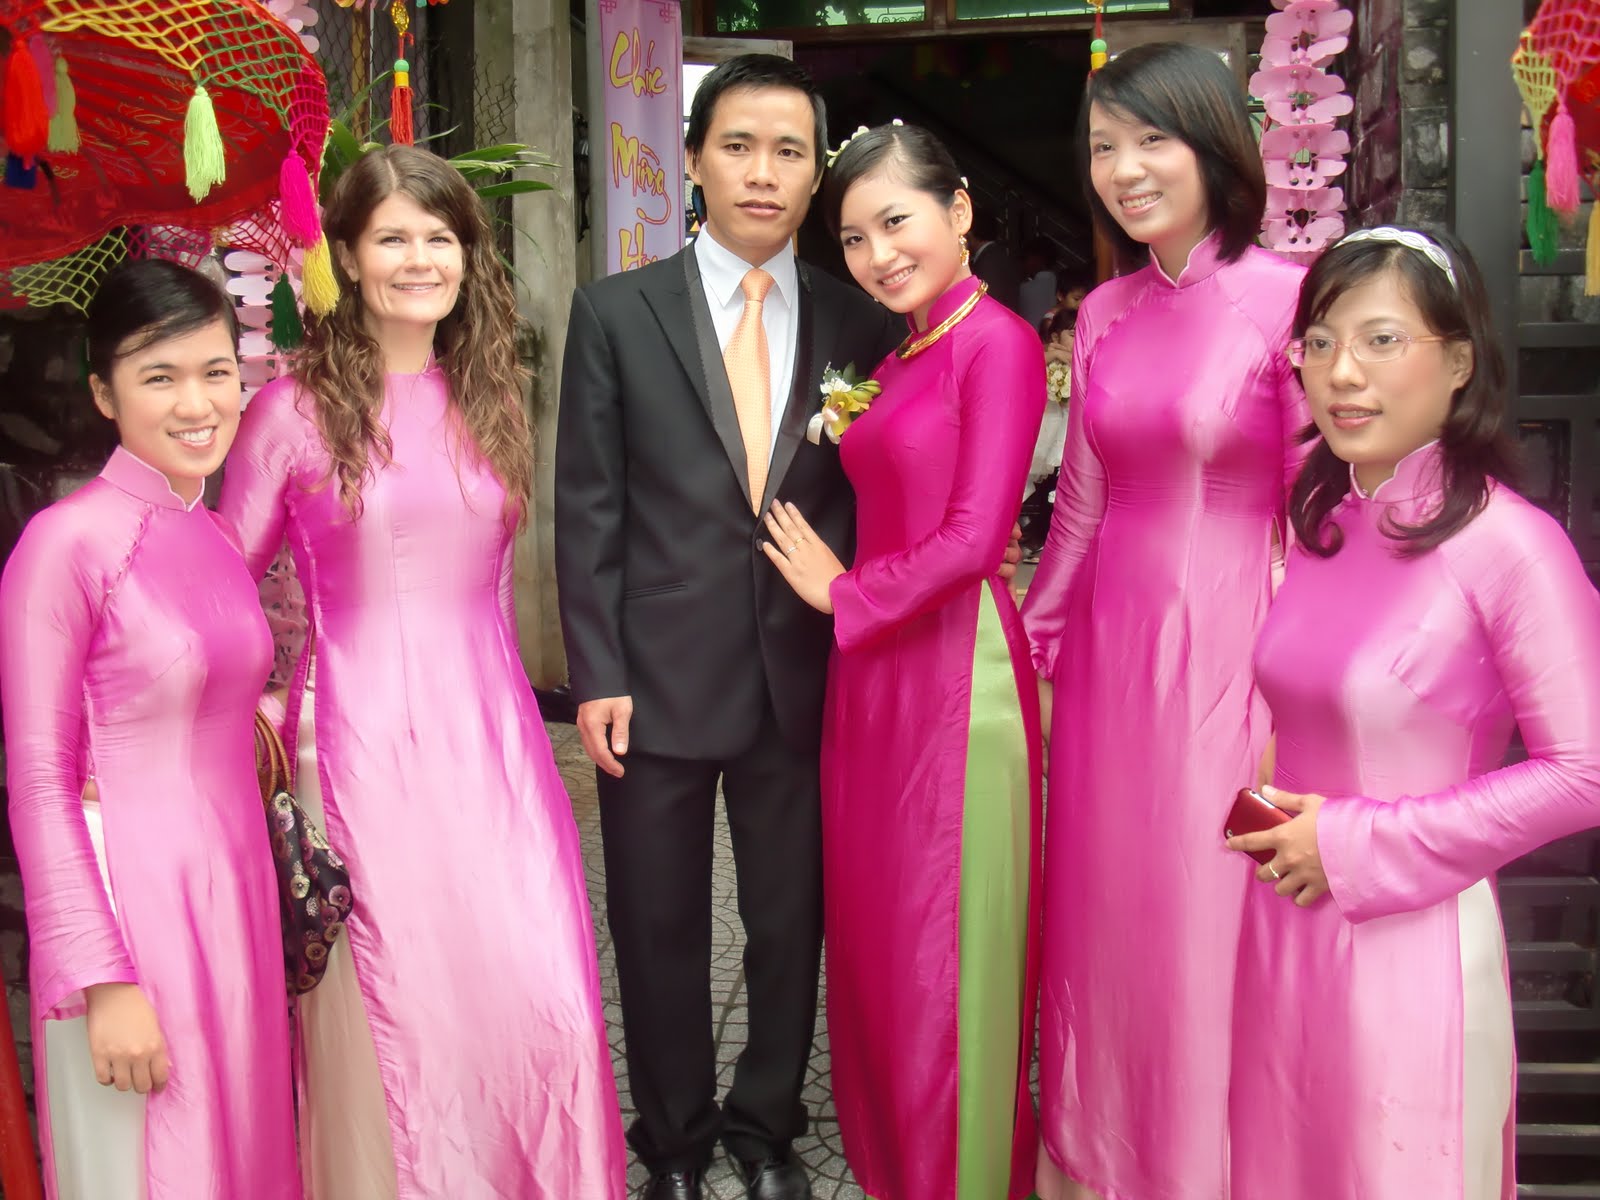 Sarah's Vietnam Adventure: Vietnamese Weddings